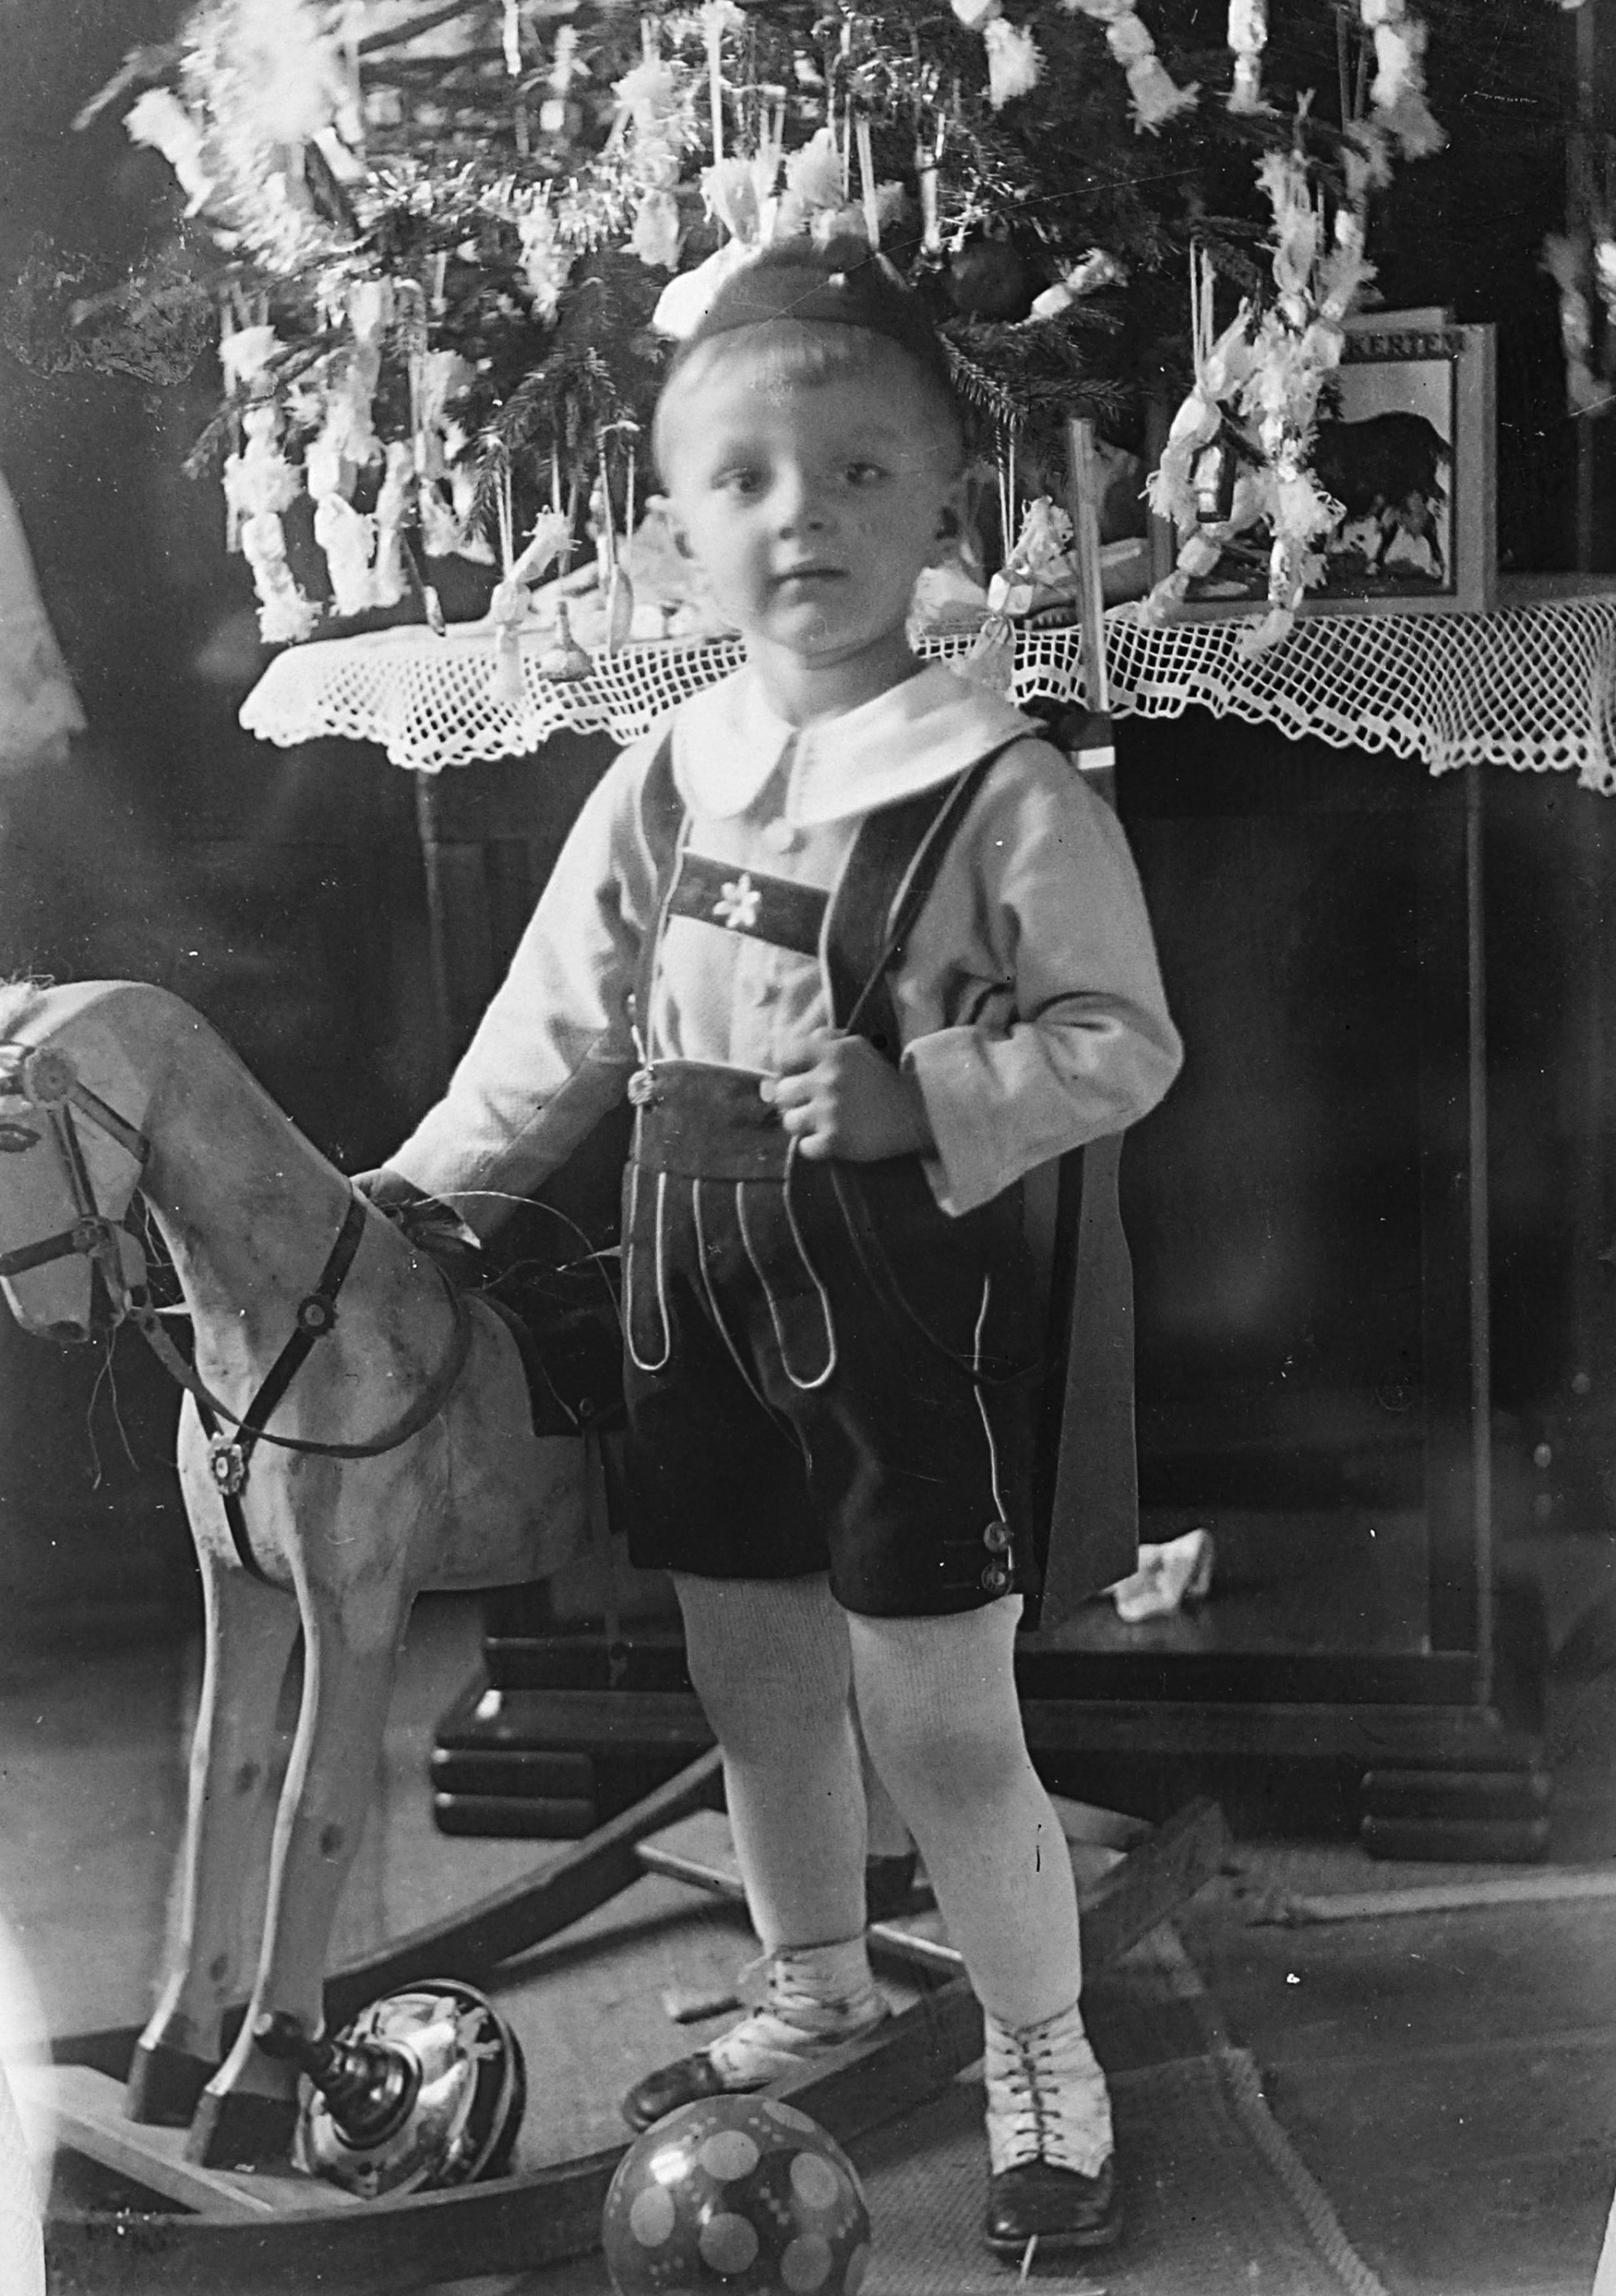 Hintalónak, búgócsigának, pöttyös labdának is örülhetett ez a kisfiú 1929-ben.